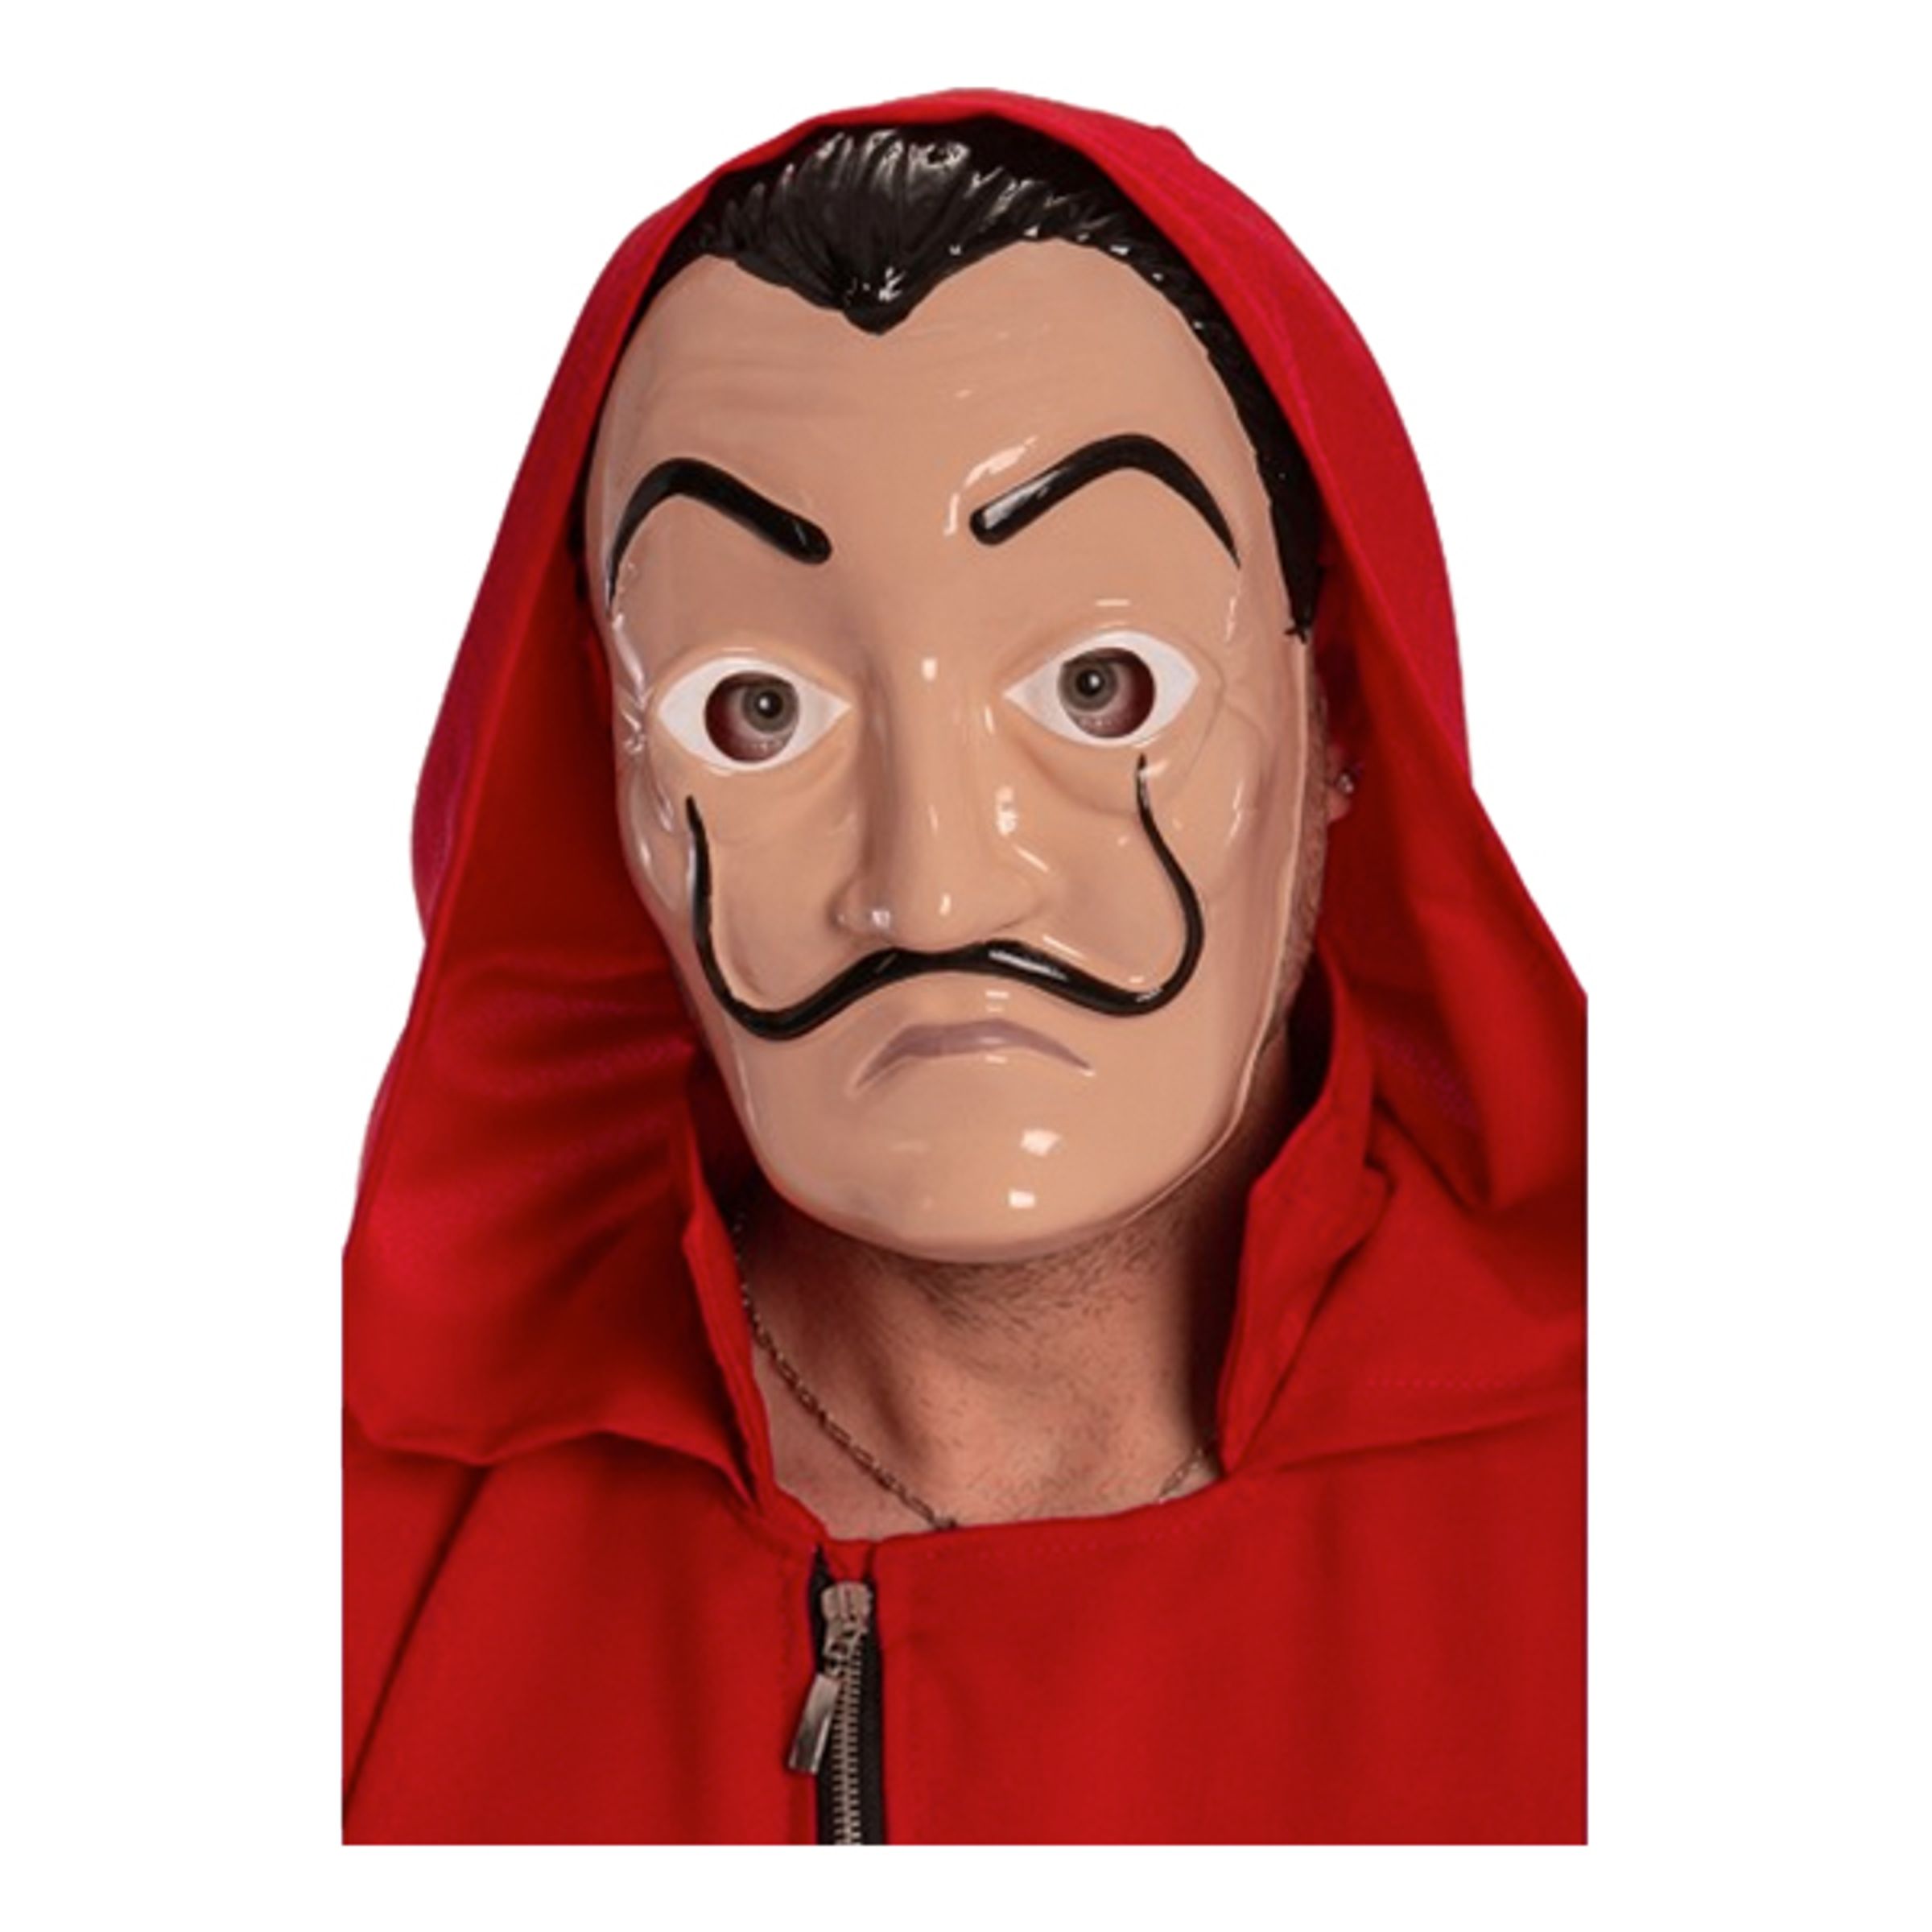 Salvador Dalí Mask - One size